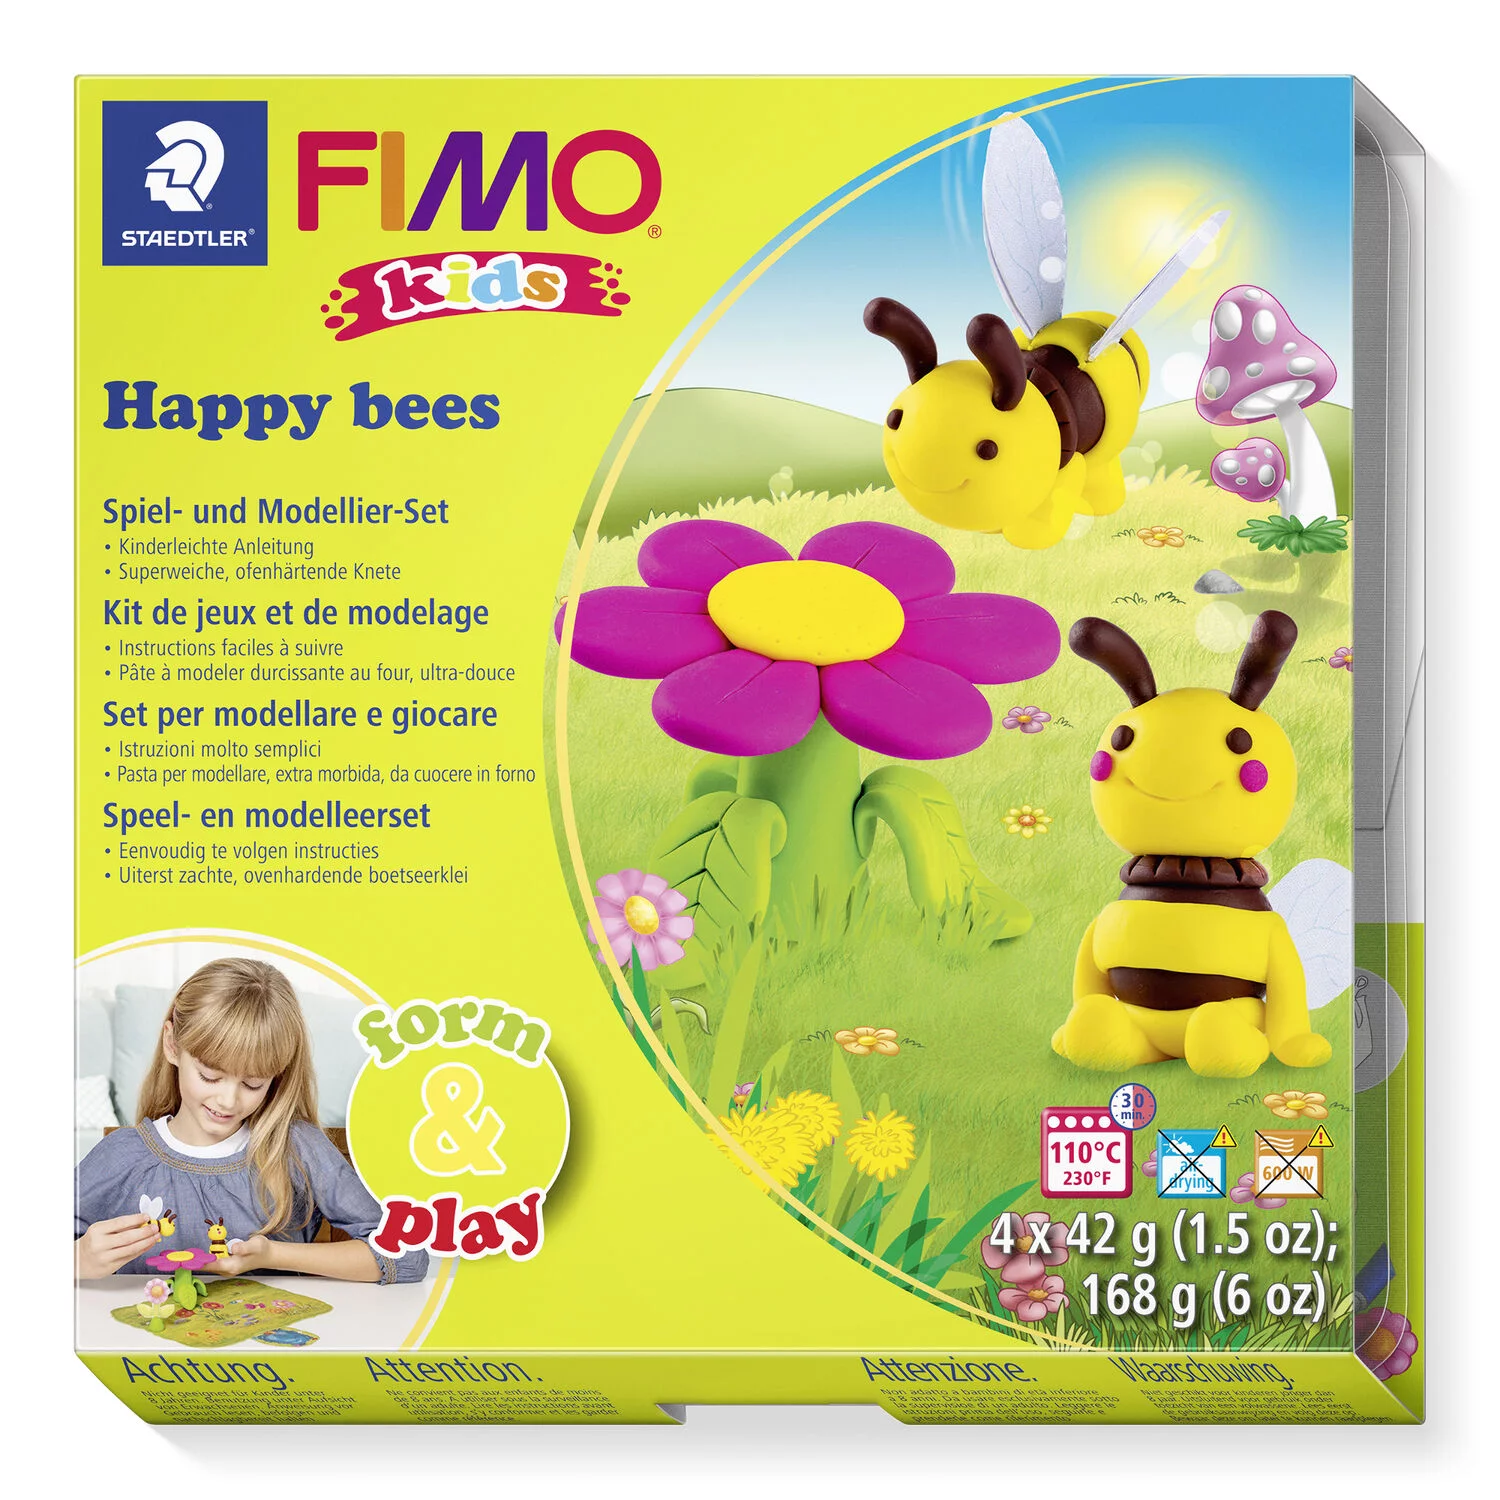 STAEDTLER 8034 27 LY - Fimo kids Set Happy bees - ofenhärtende Modelliermasse, 4x42g